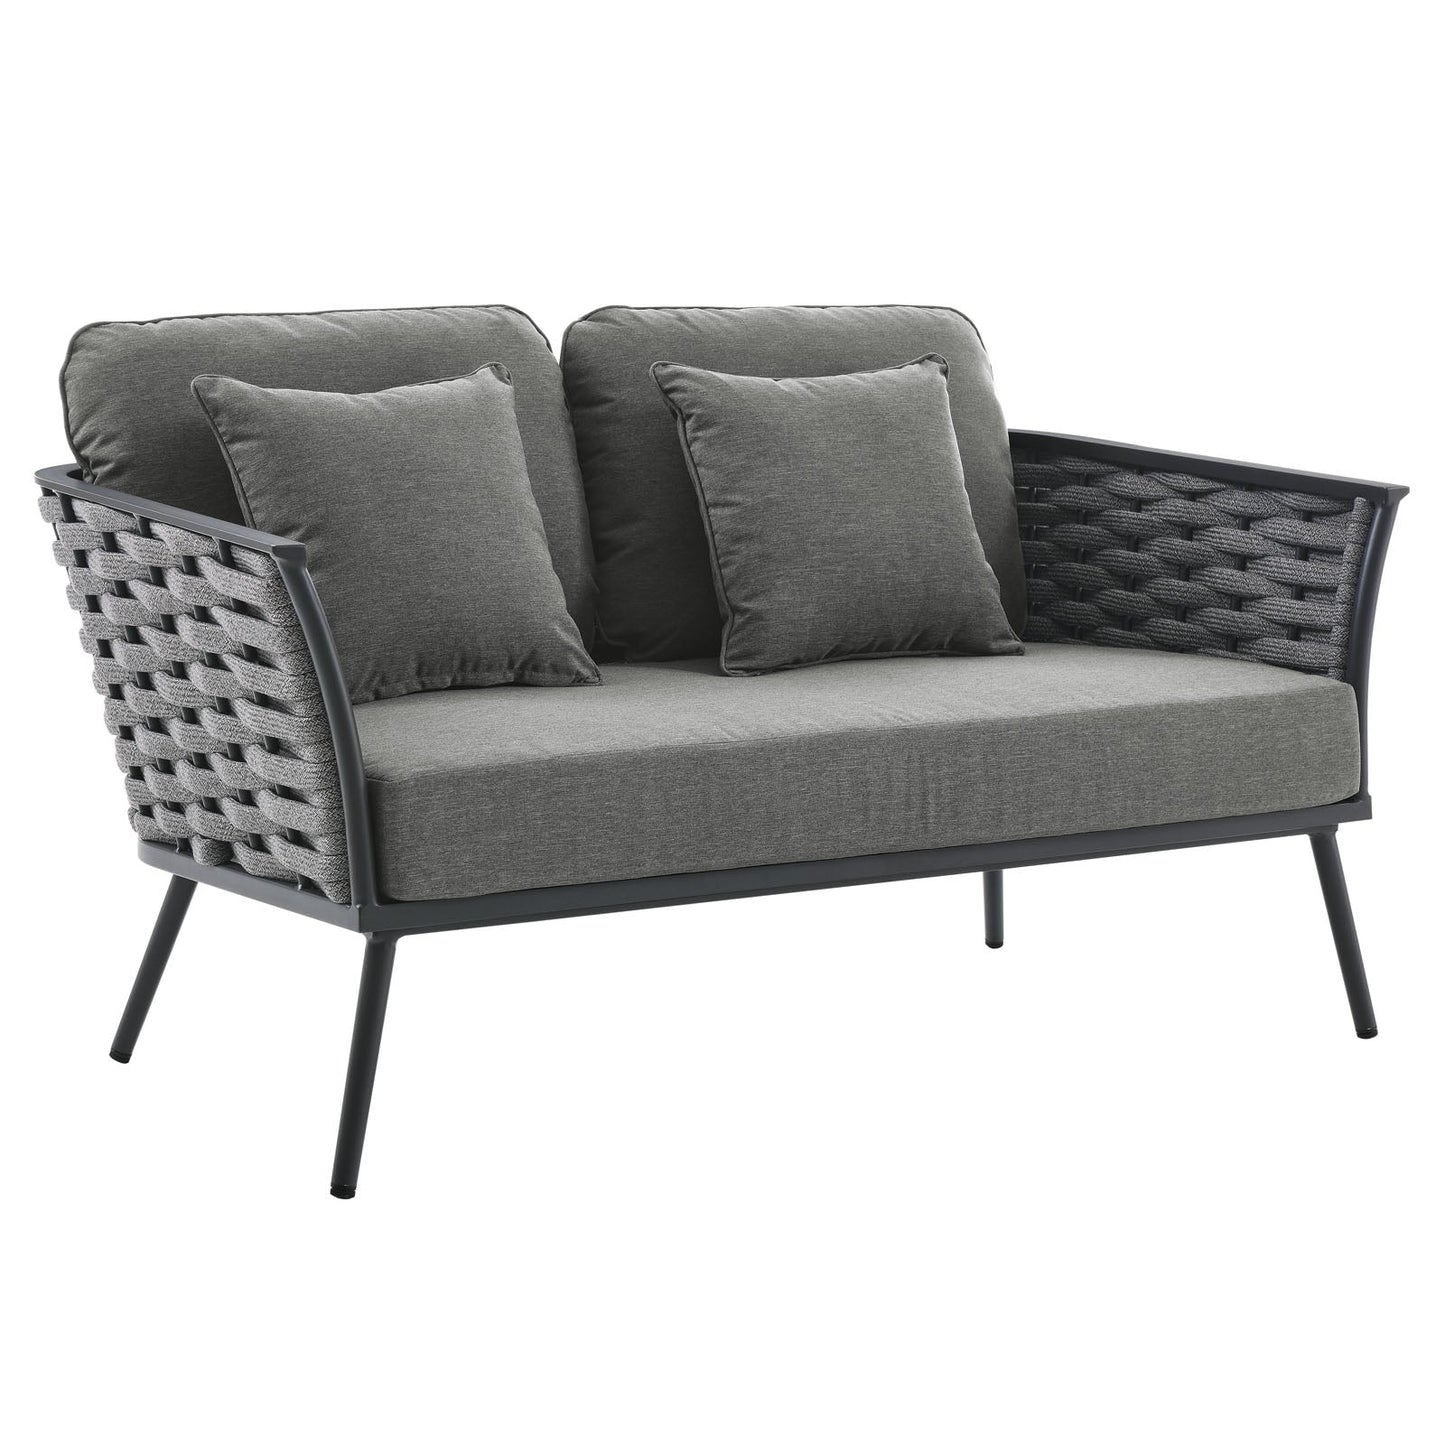 Sahira 4 Piece Outdoor Patio Aluminum Sectional Sofa Set